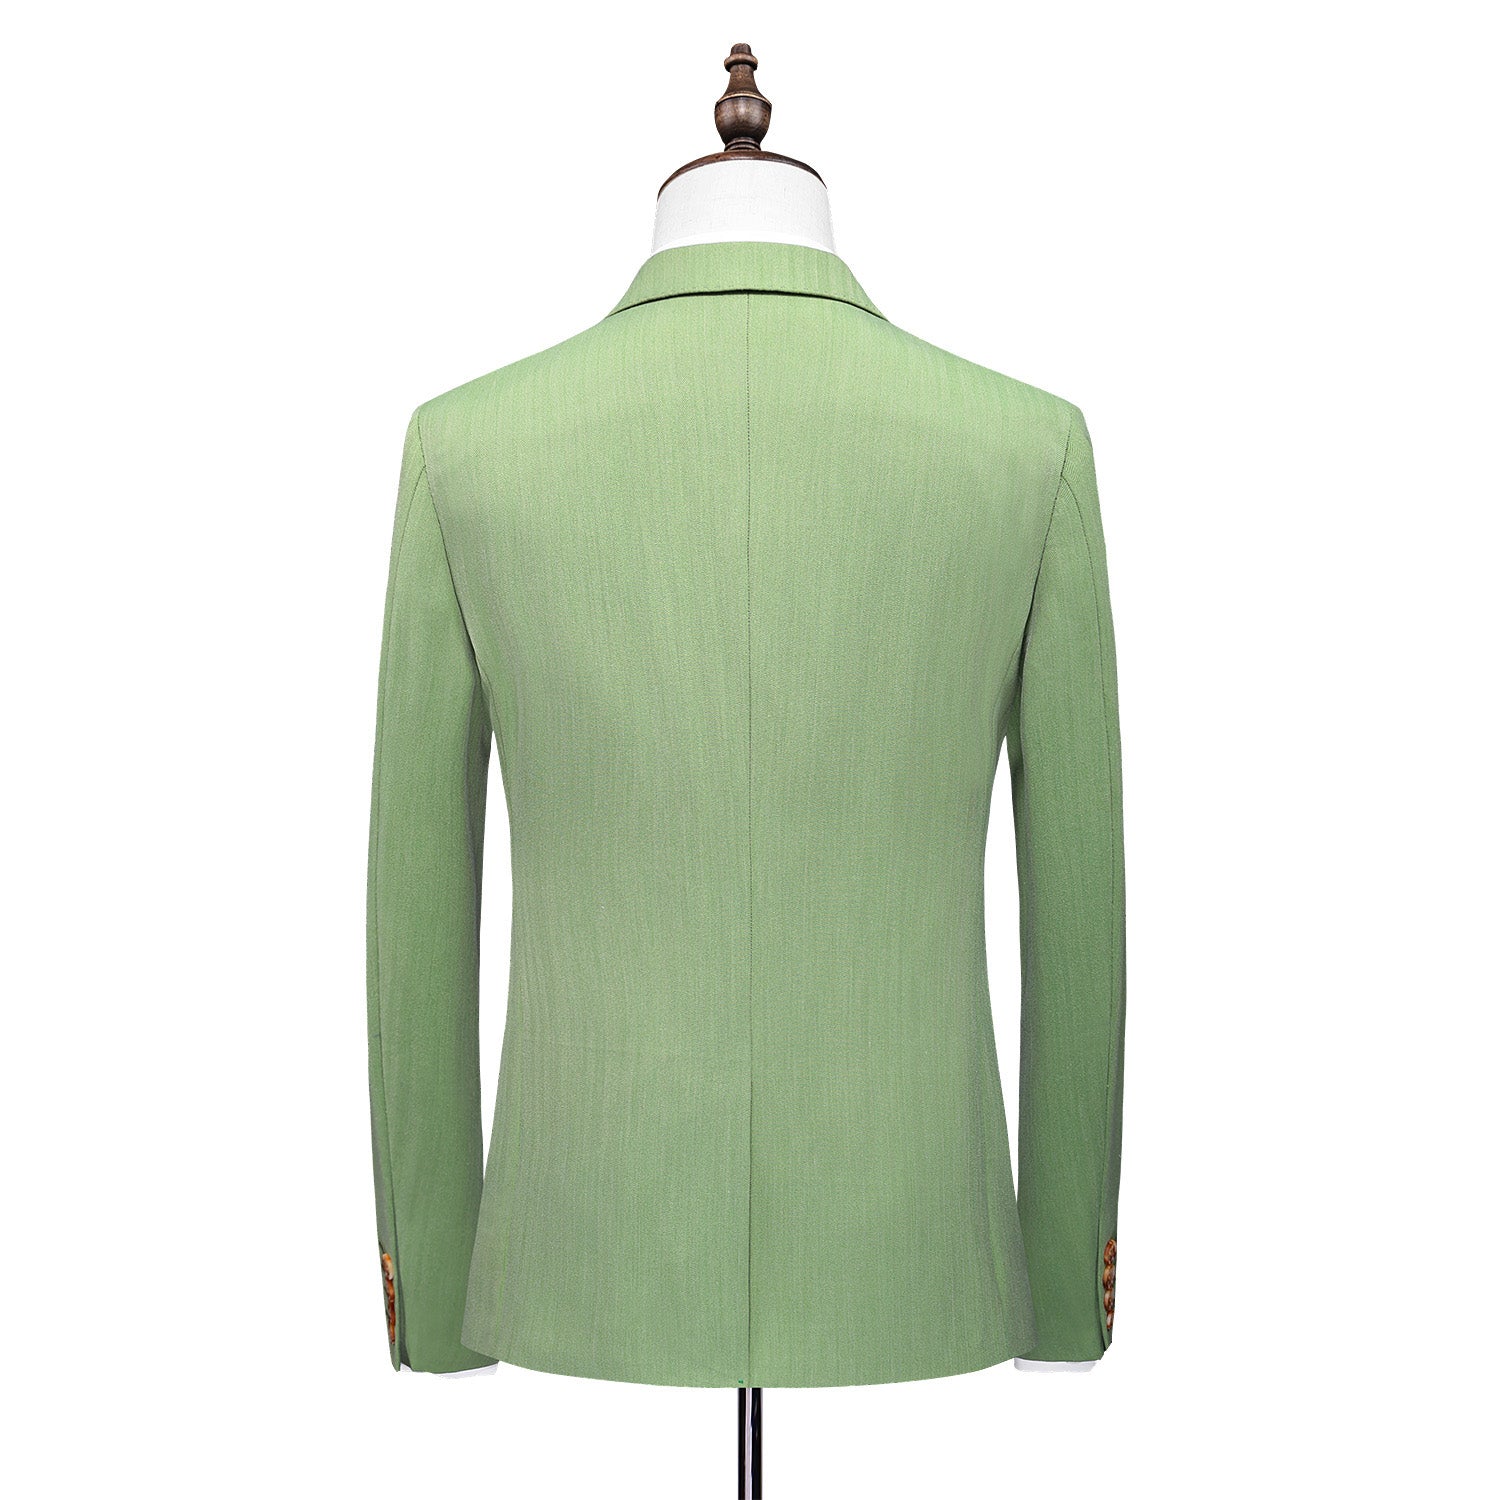 Men's Solid Green 3 Piece Suit